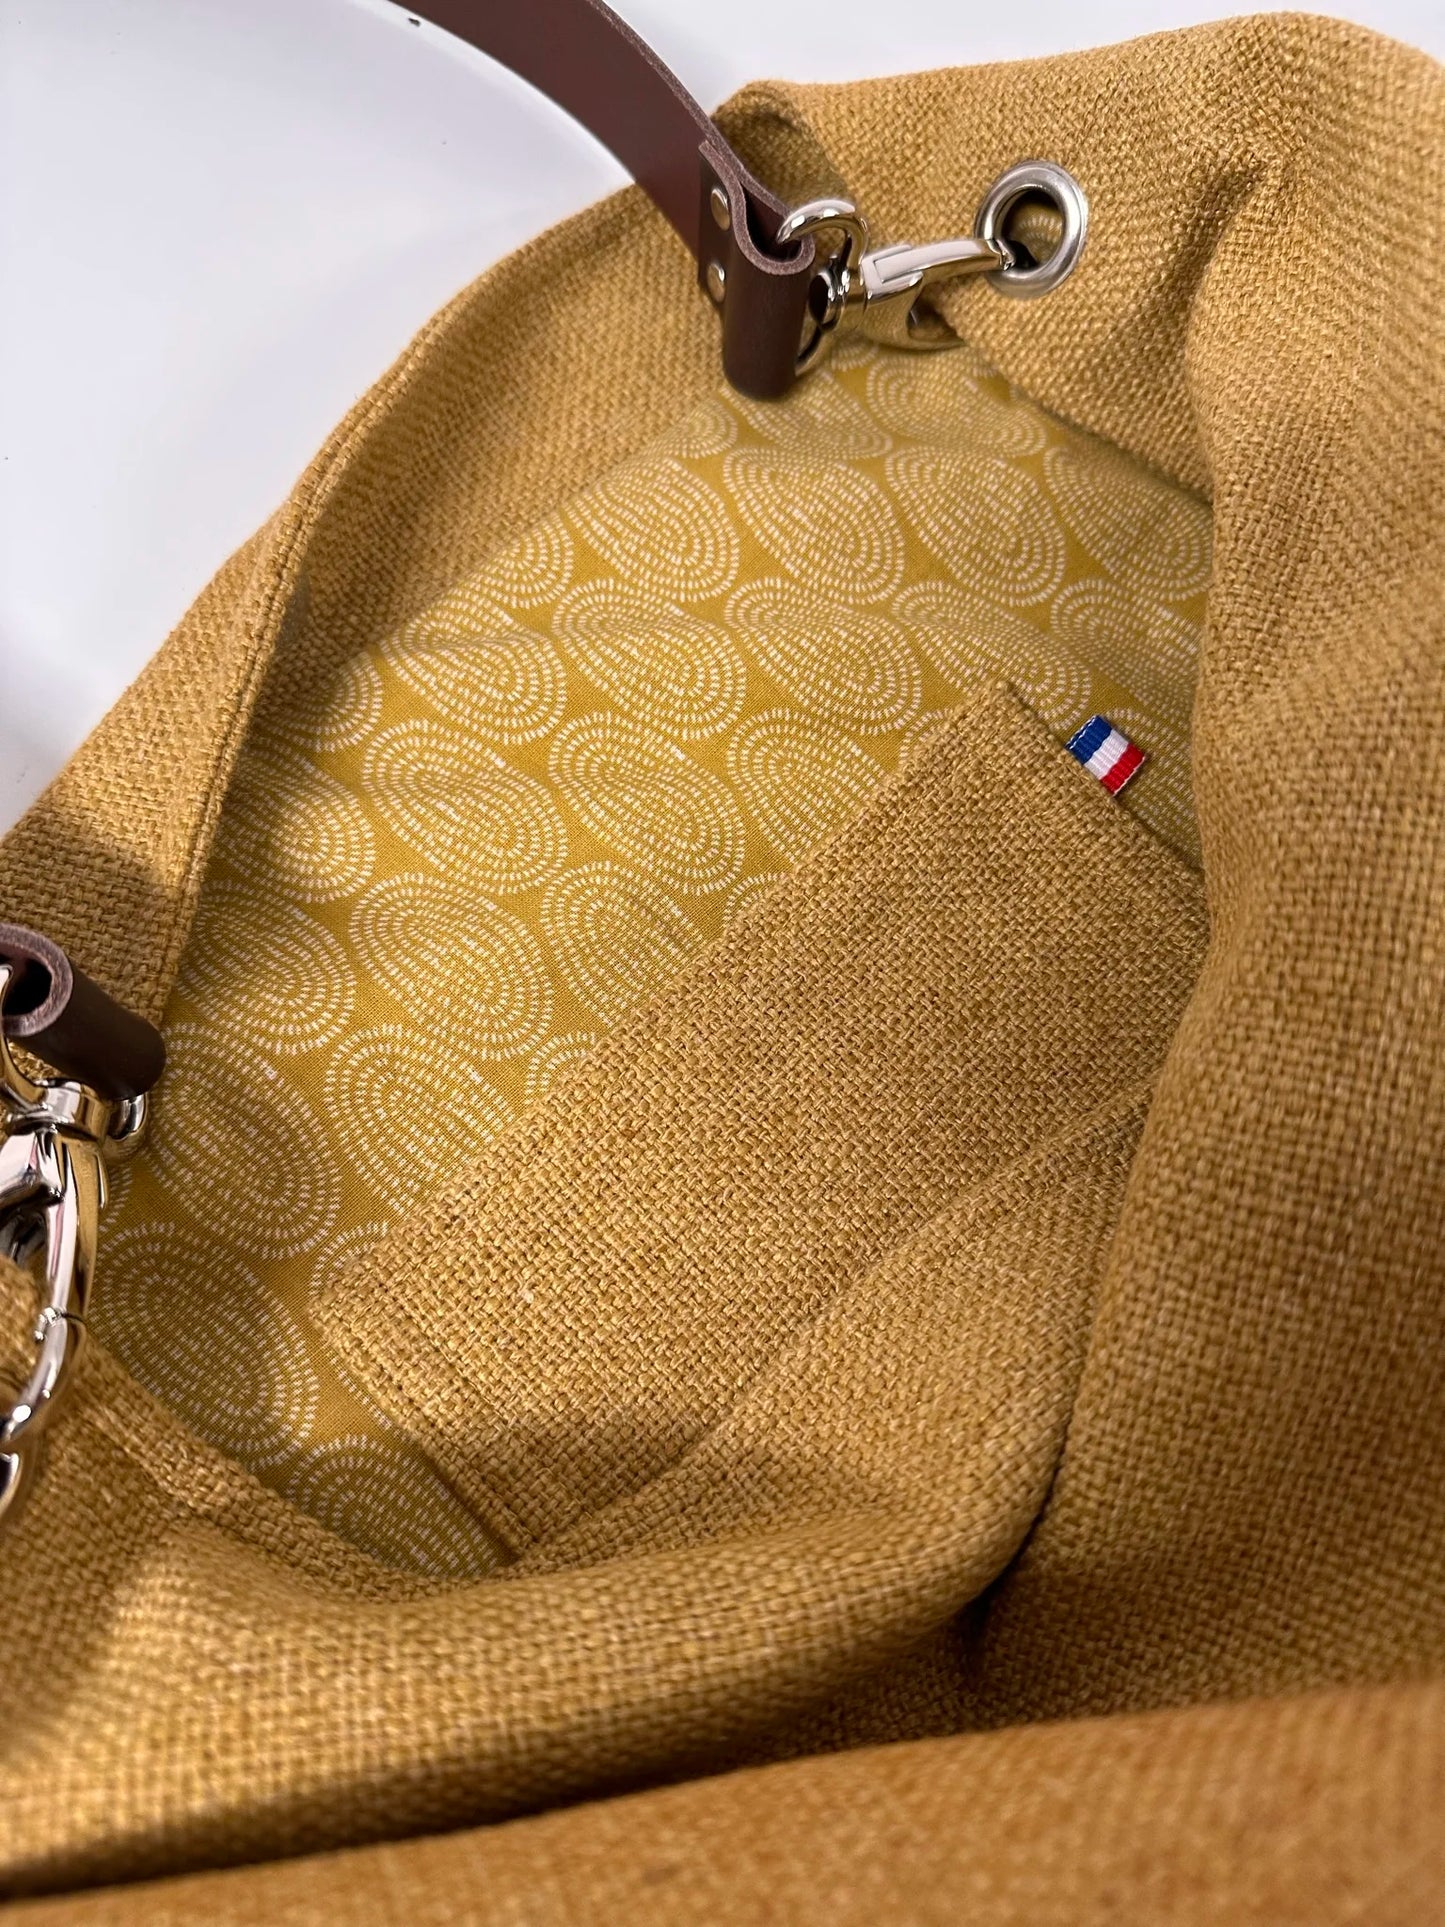 La poche intérieure plaquée du sac hobo en lin jaune moutarde et son anse en cuir marron amovible.